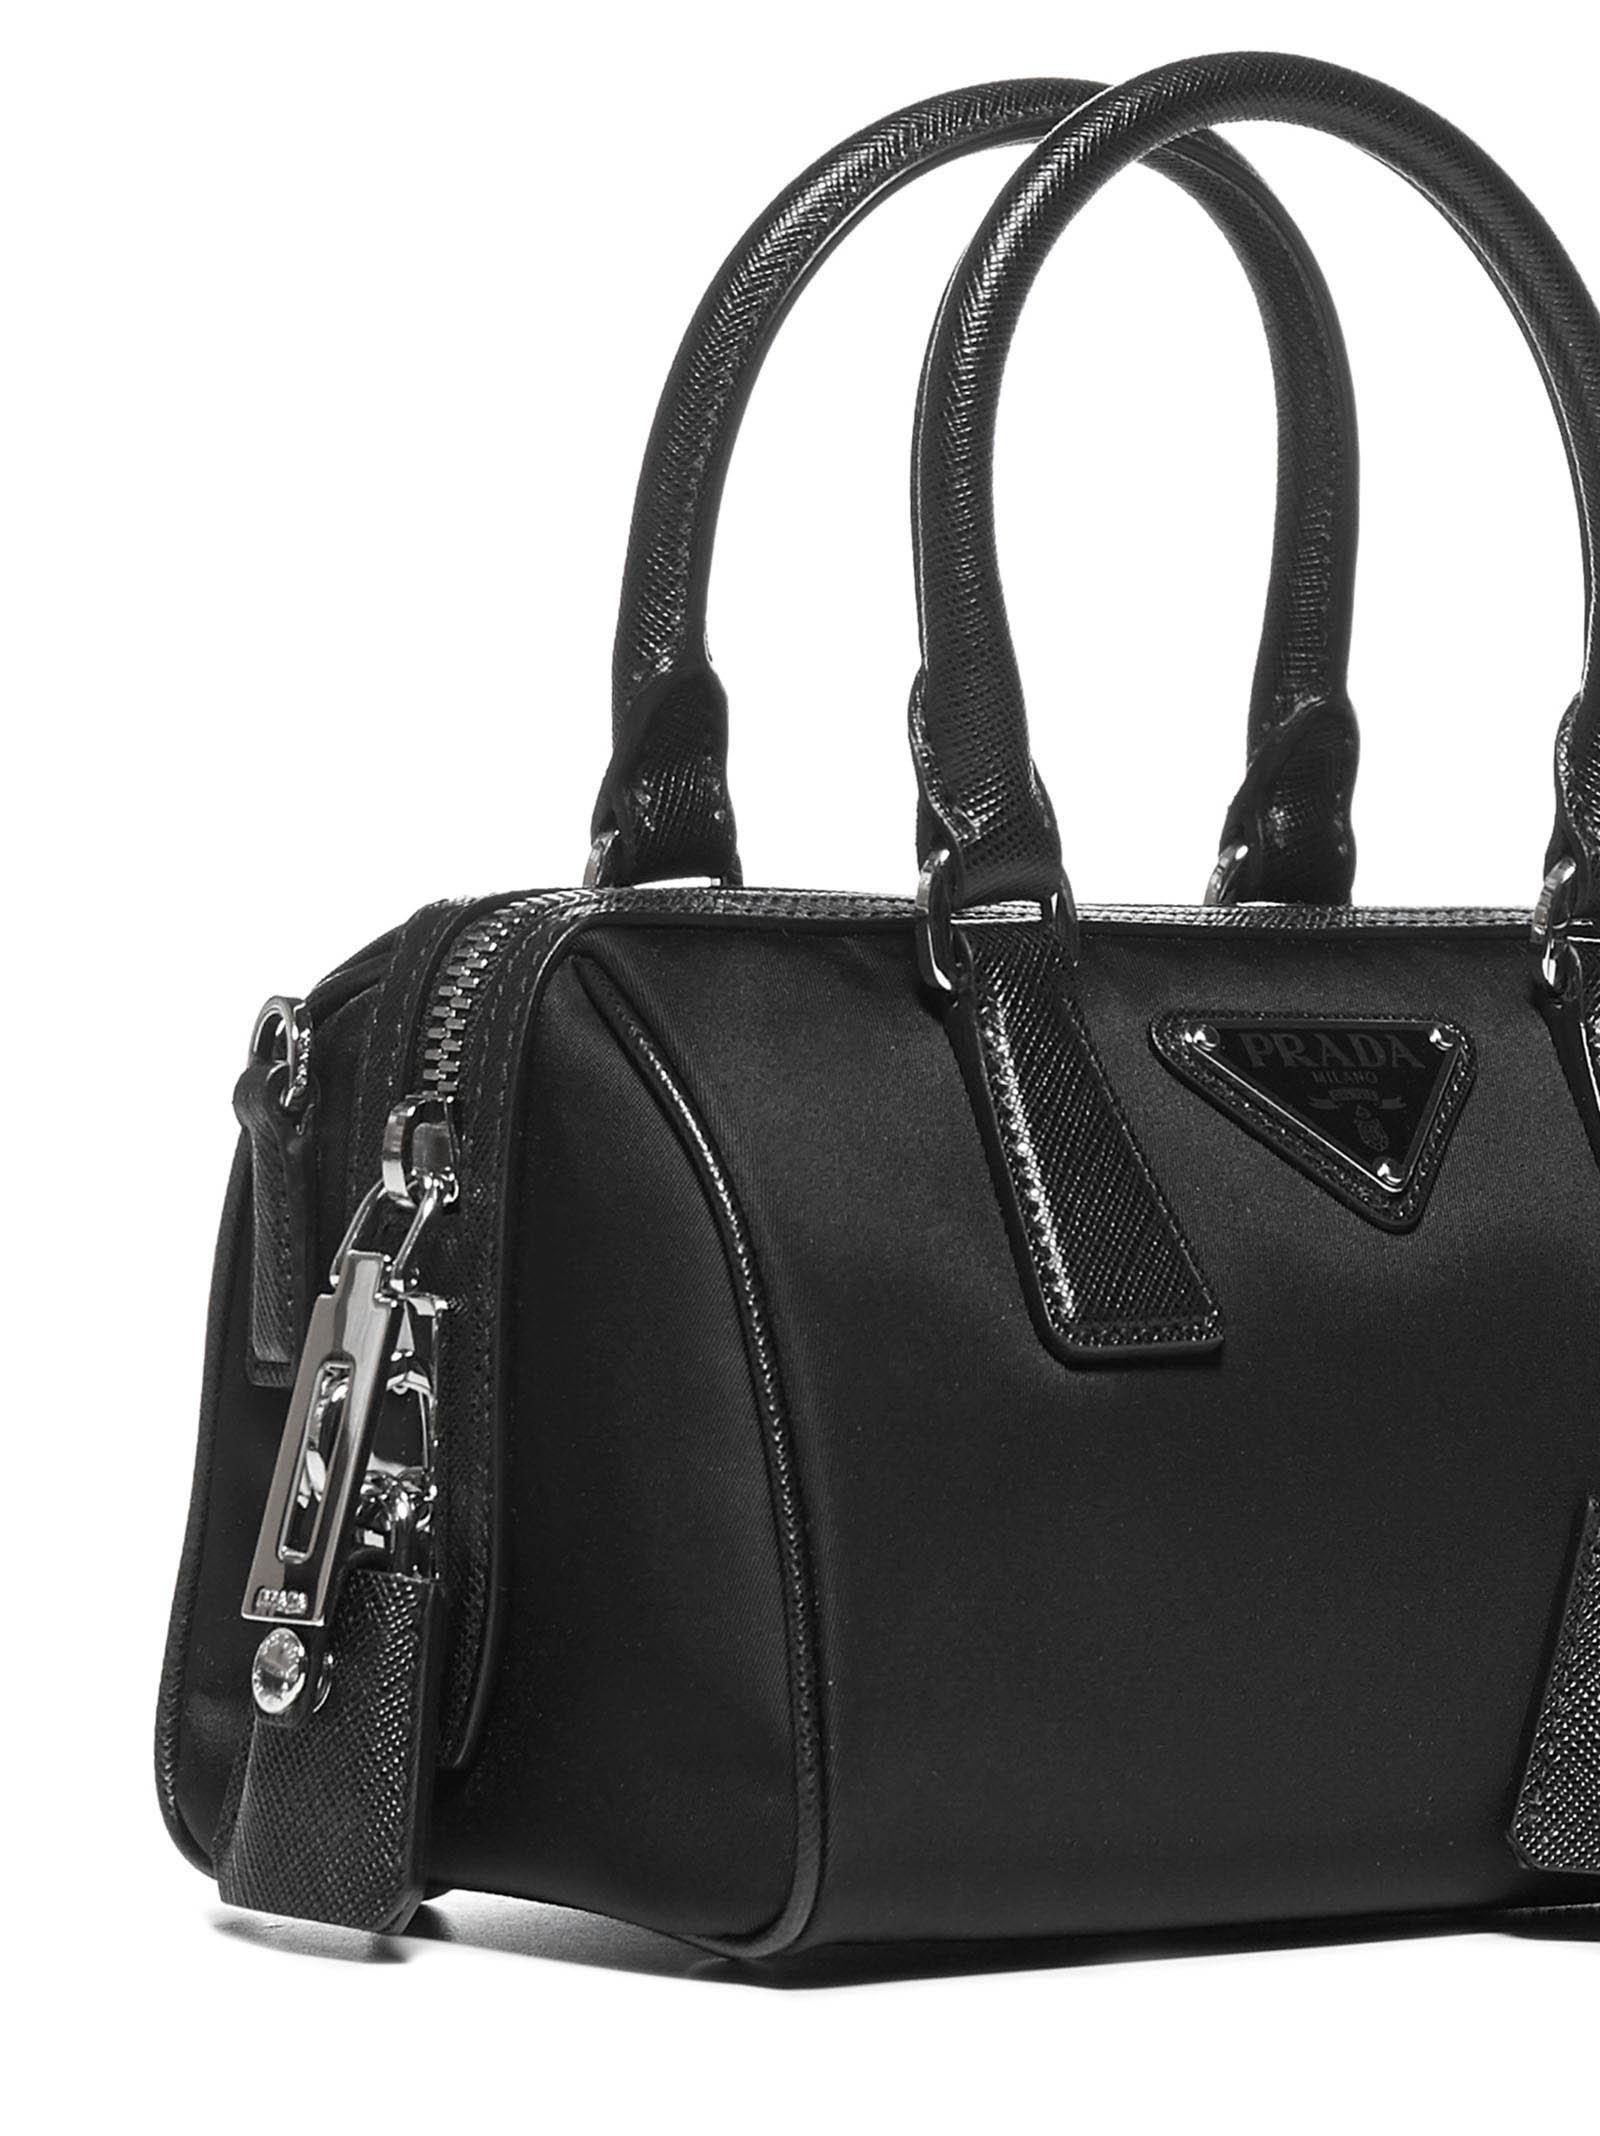 Prada Re-edition 2005 Nylon And Saffiano Leather Bag in Black